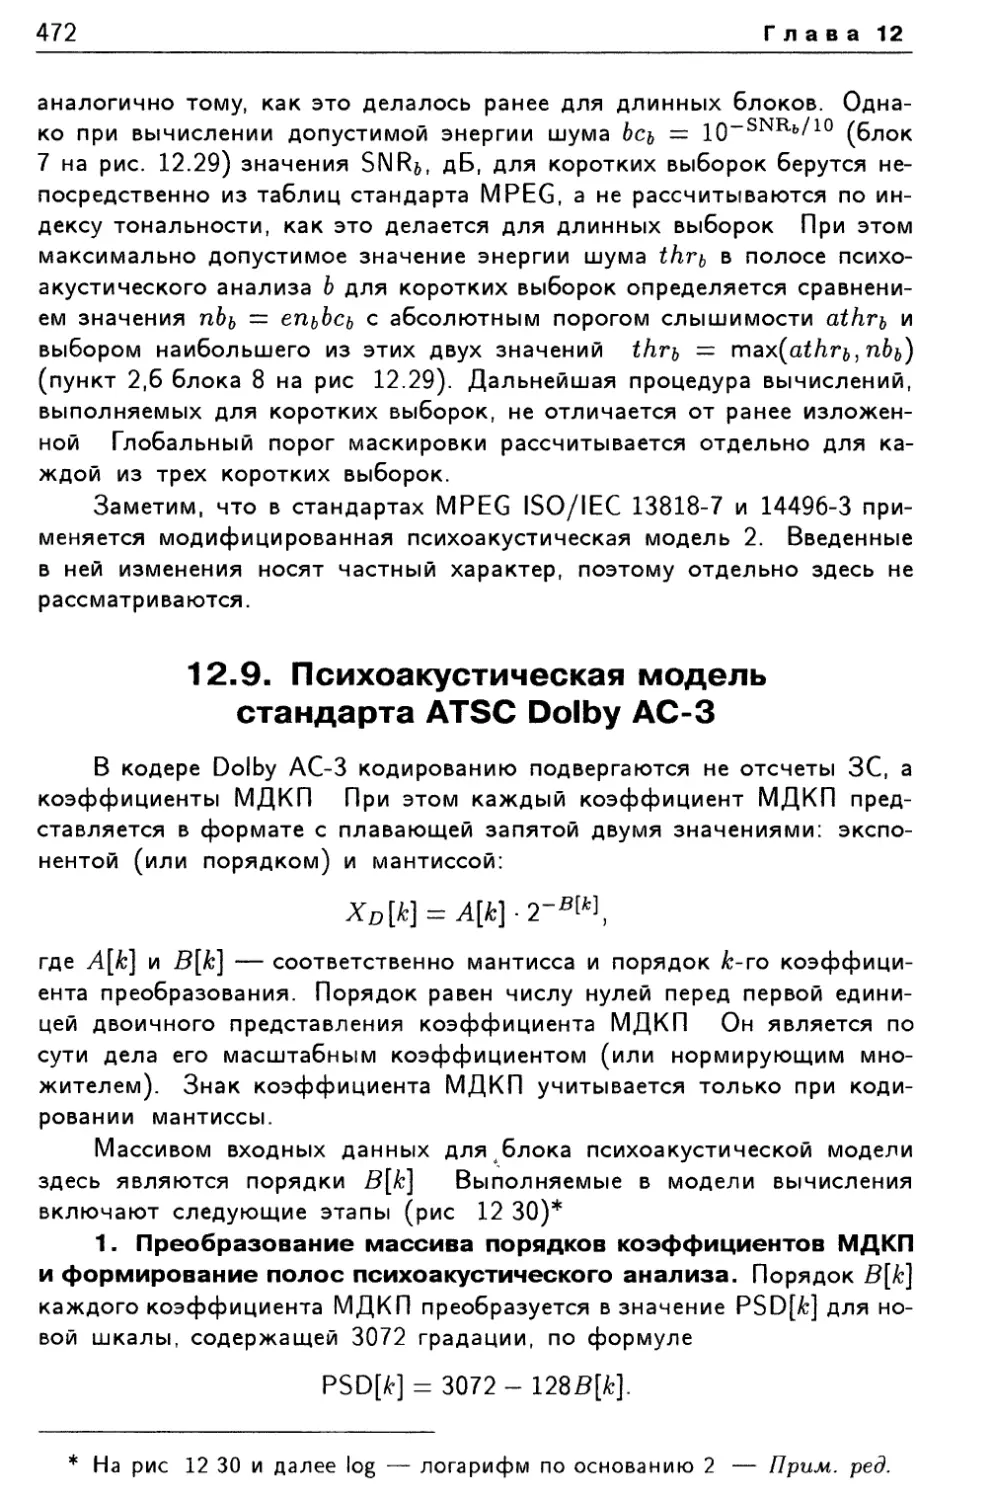 12.9. Психоакустическая модель стандарта ATSC Dolby АС-3